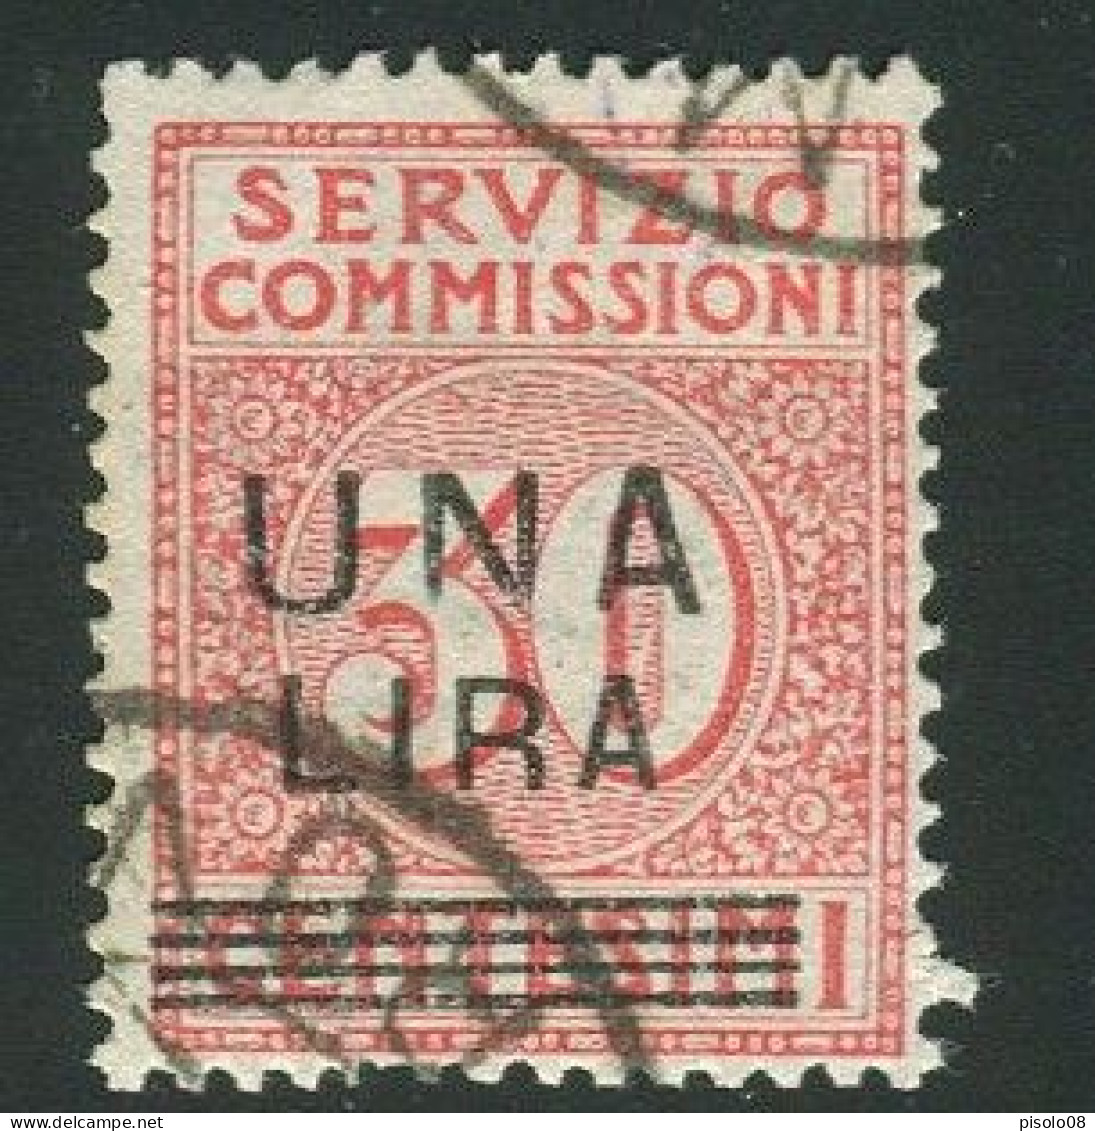 REGNO 1925 SERVIZIO COMMISSIONI 1 L. 30 C.USATA - Postage Due